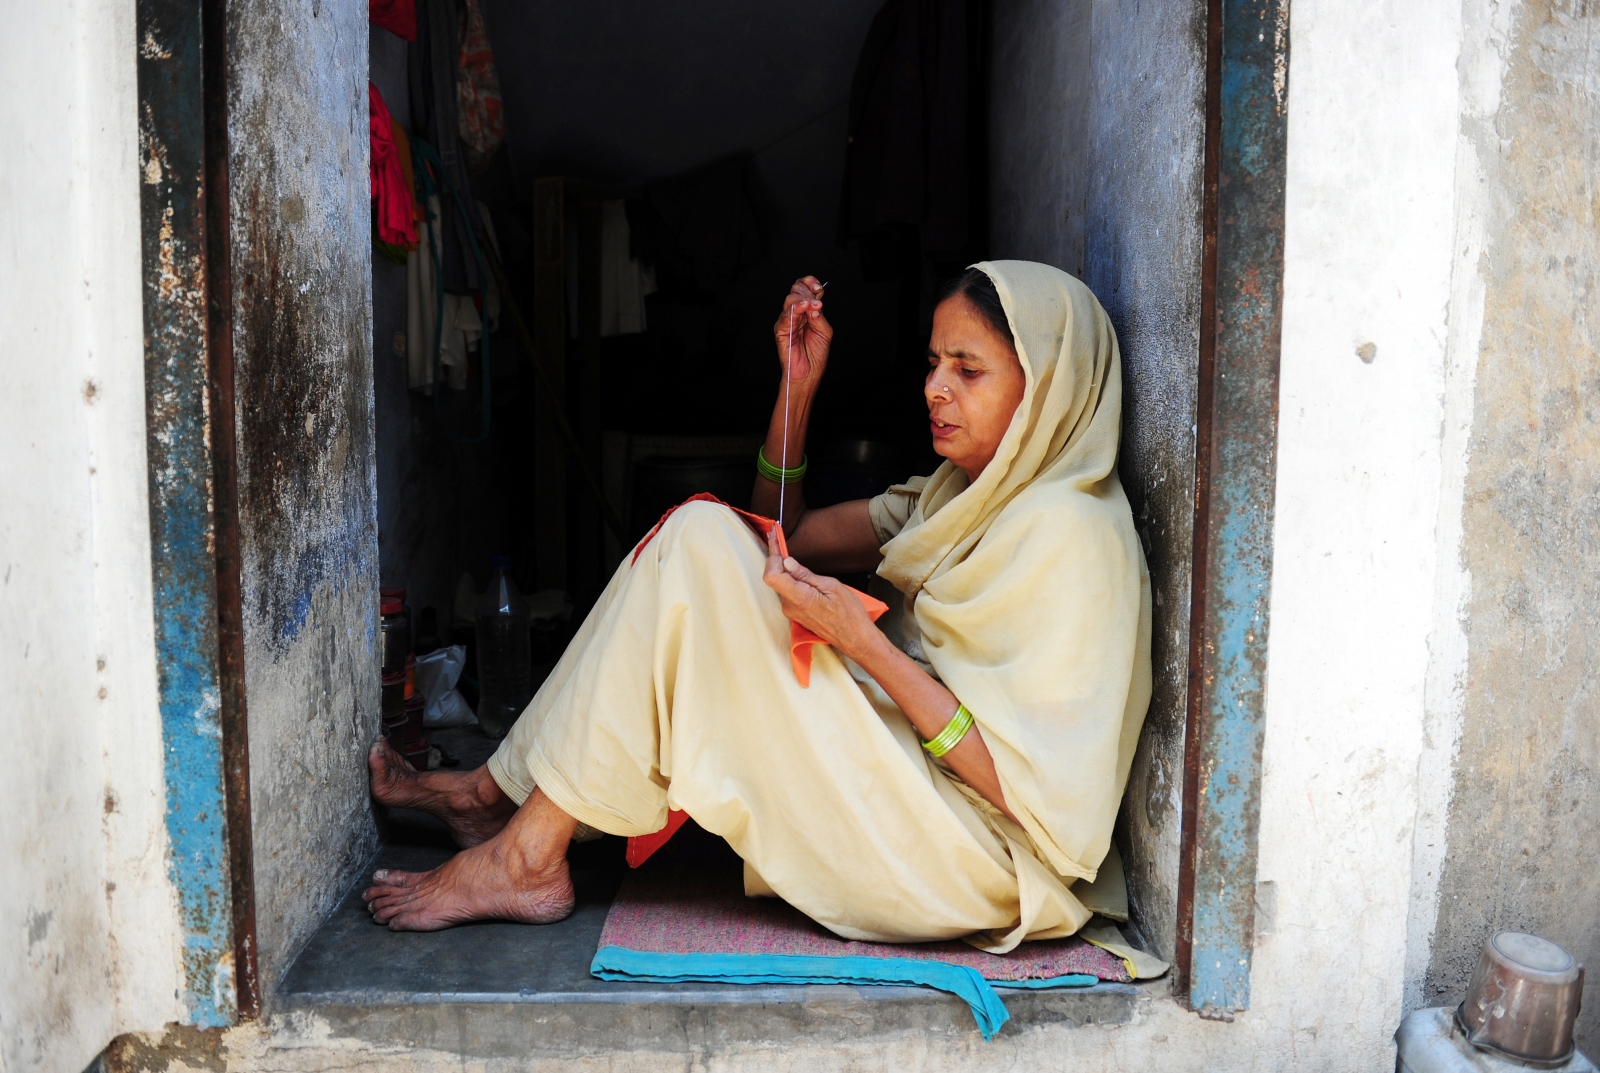 Women in india widow Widow women